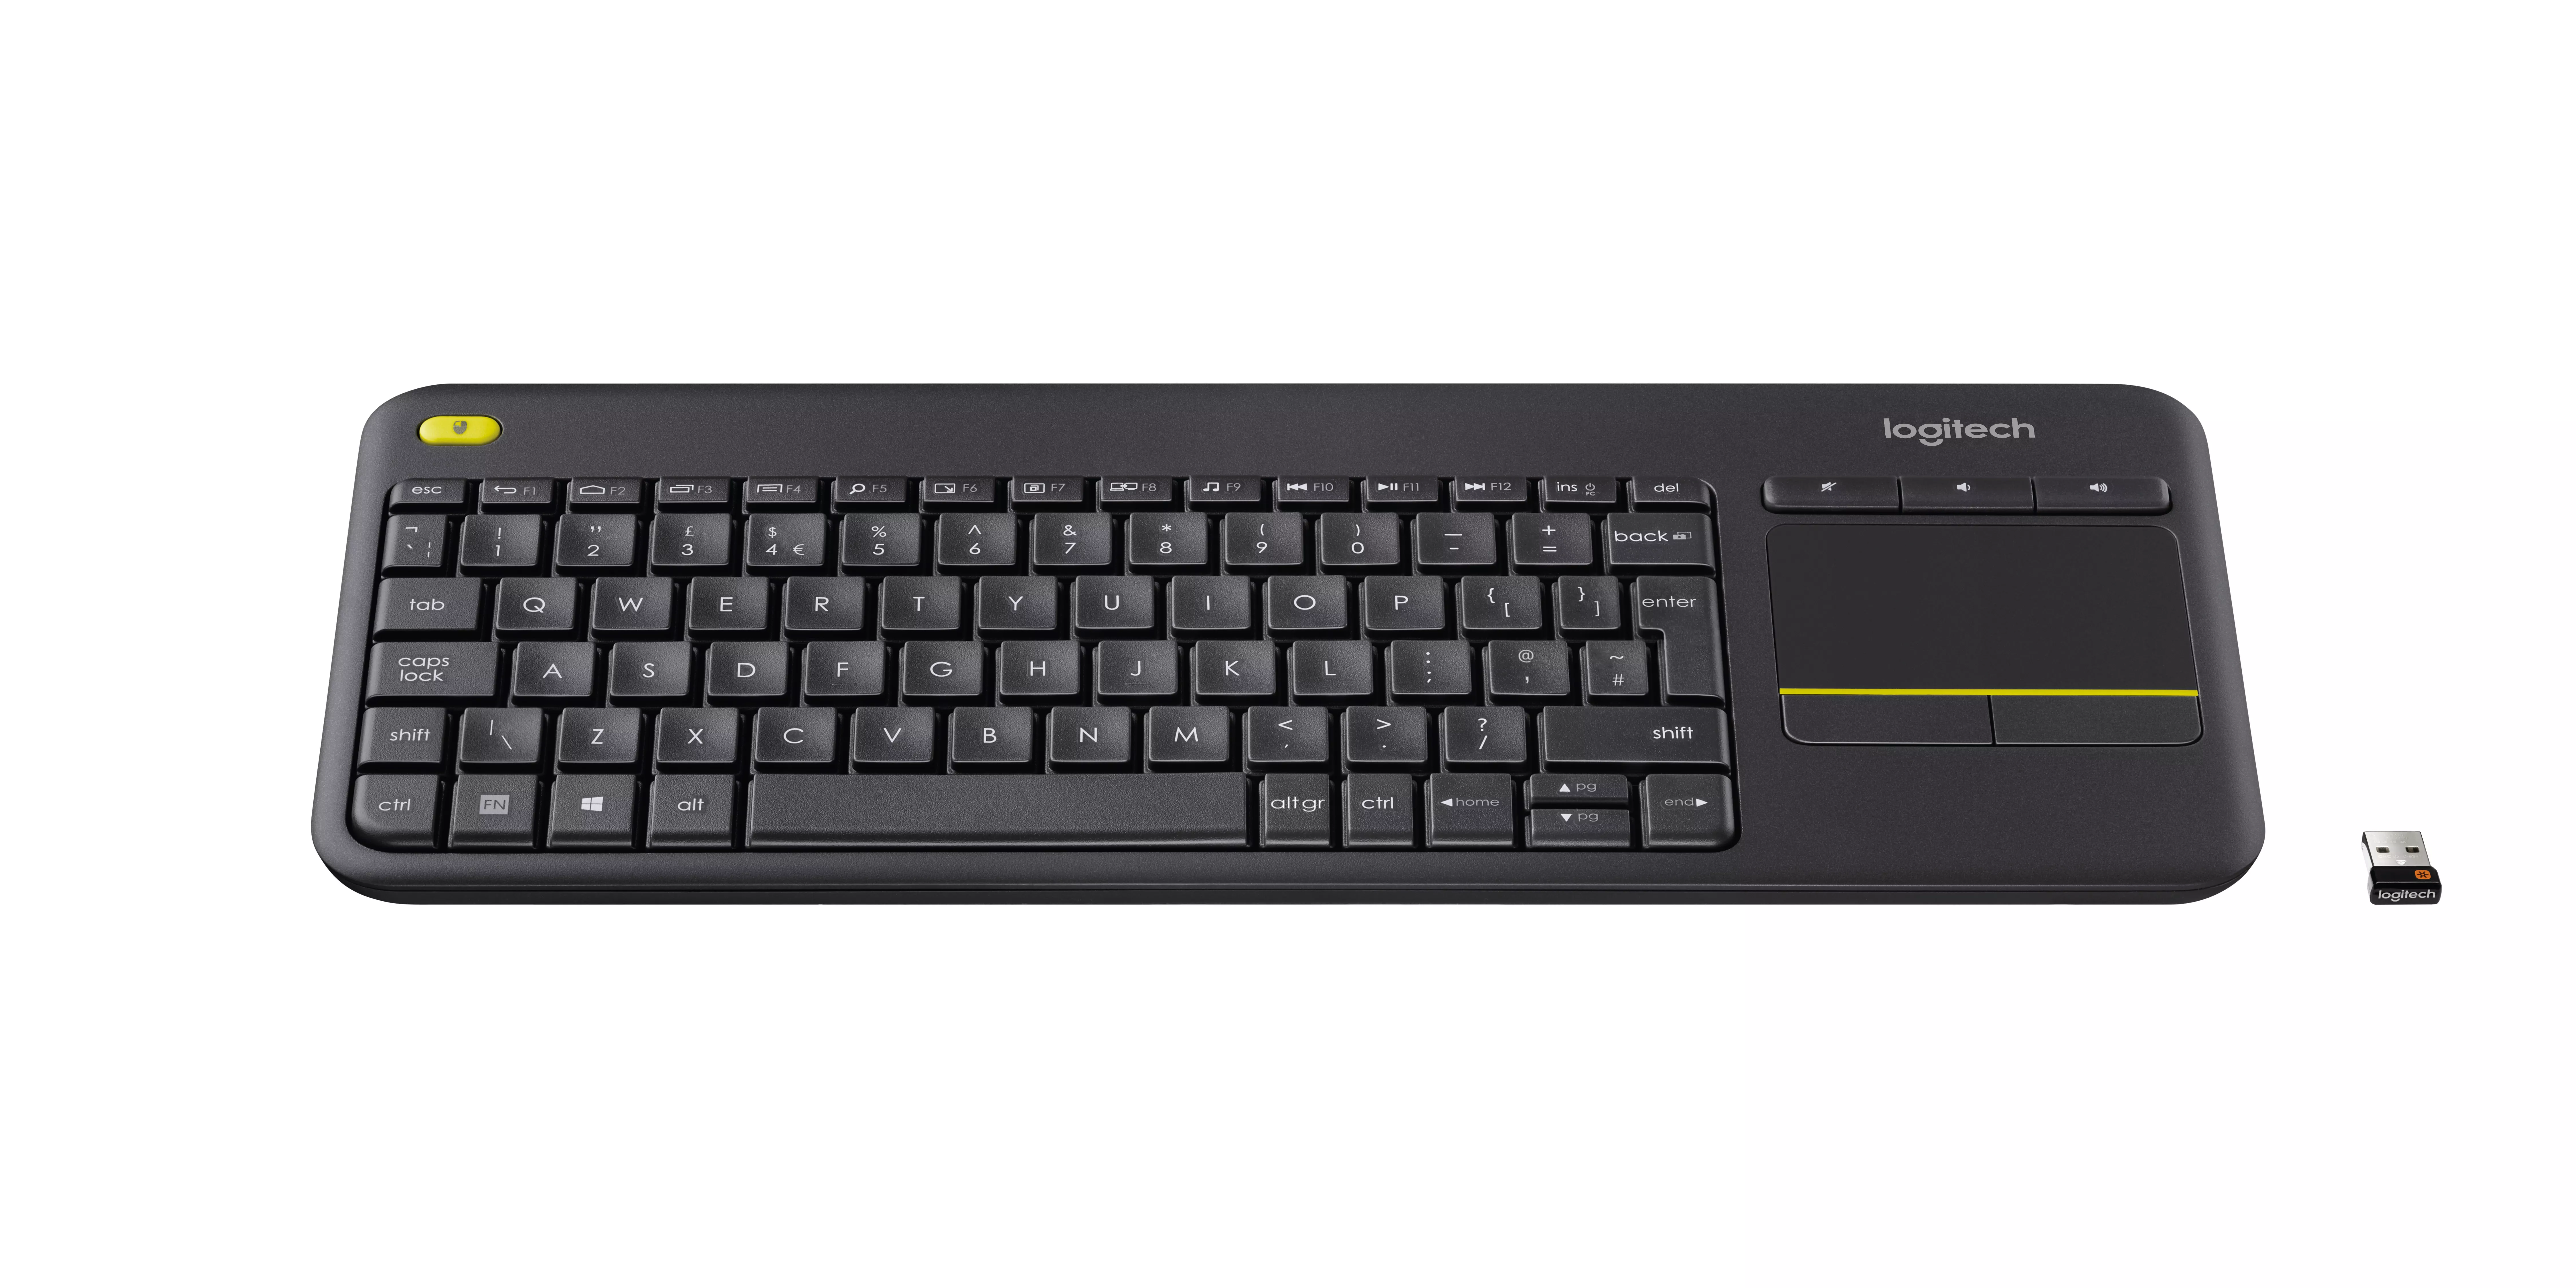 Vente Logitech Wireless Touch Keyboard K400 Plus Clavier HTPC Logitech au meilleur prix - visuel 2